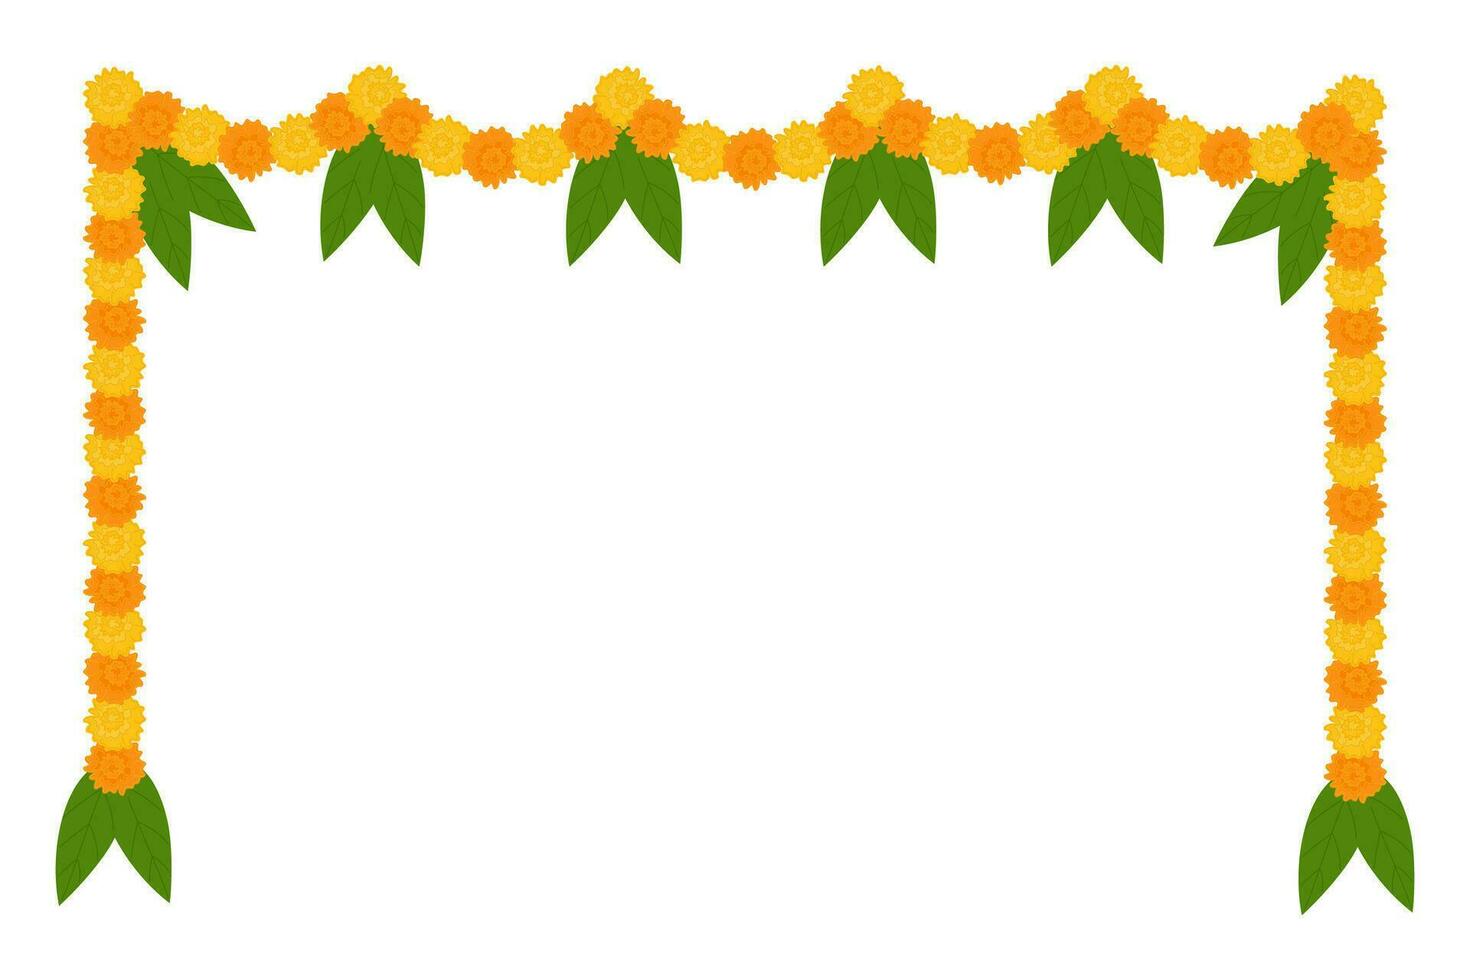 traditioneel Indisch bloem slinger met goudsbloem bloemen en mango bladeren. decoratie voor Indisch Hindoe vakantie. vector illustratie geïsoleerd Aan wit achtergrond.